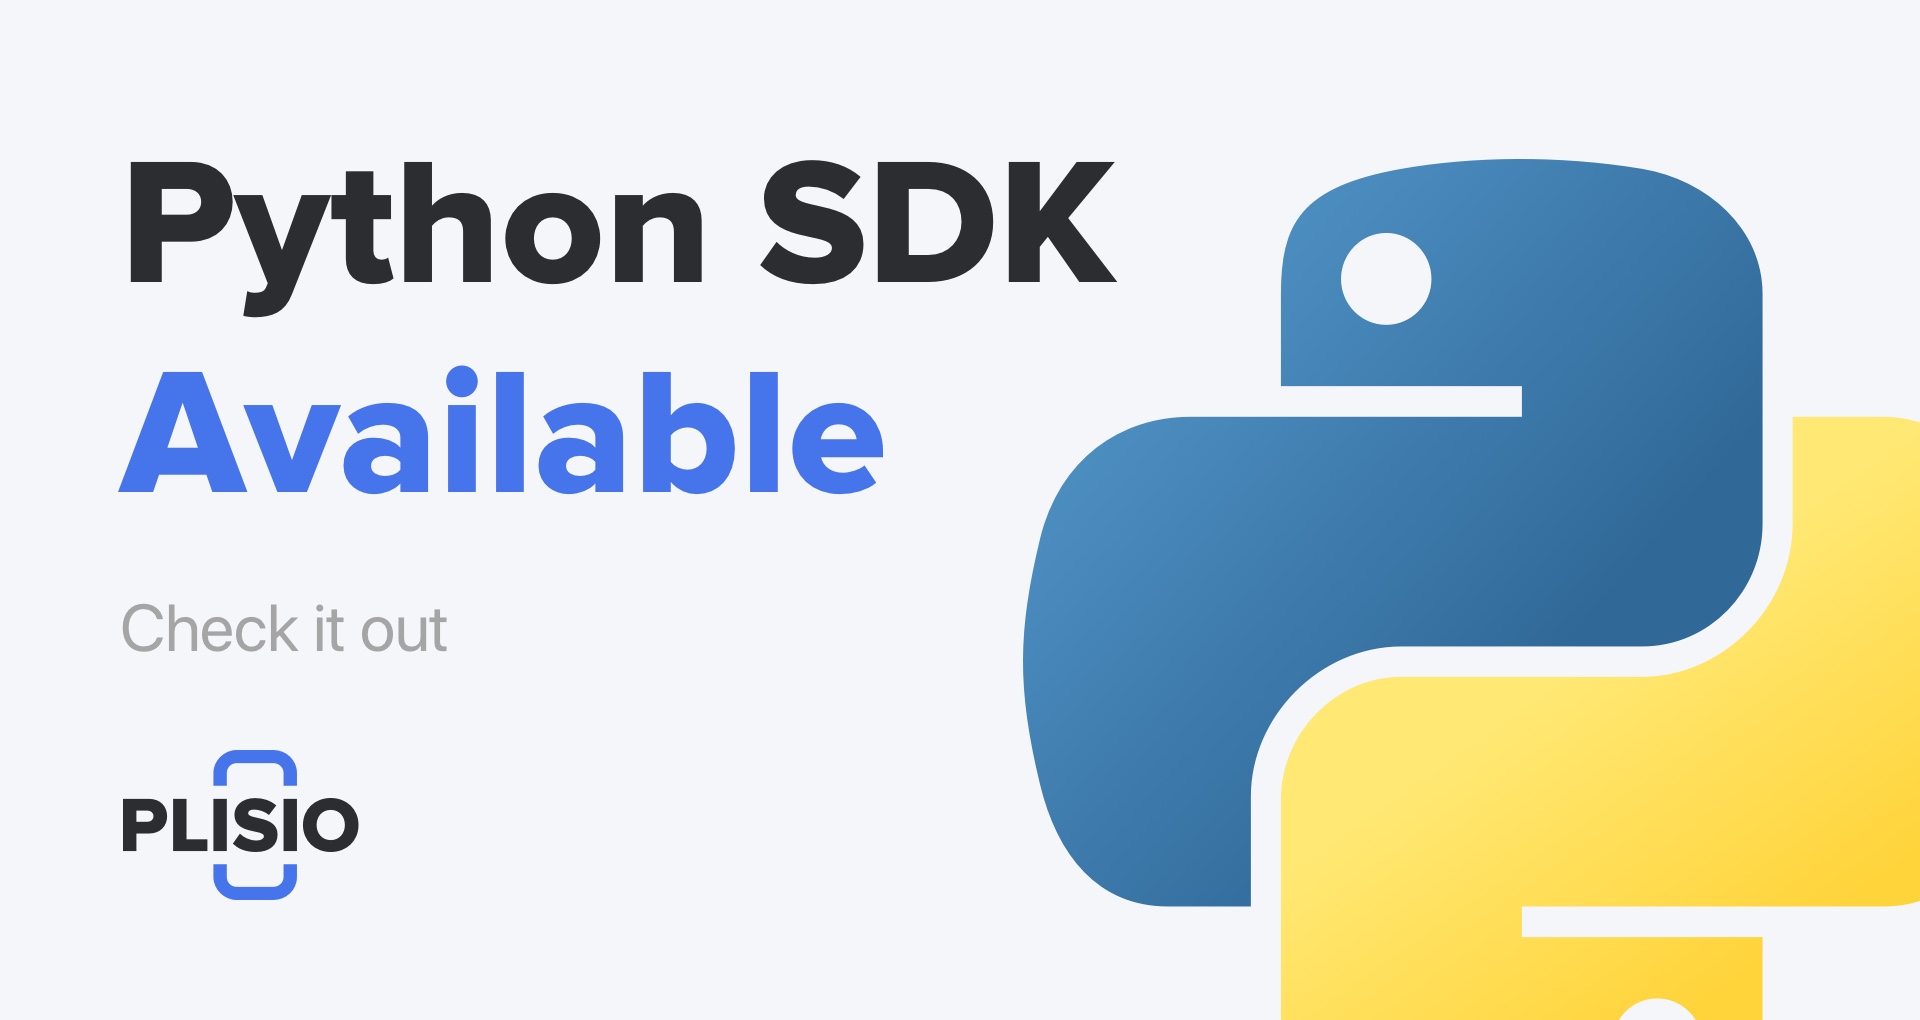 Python SDK тепер доступний. Перевір!